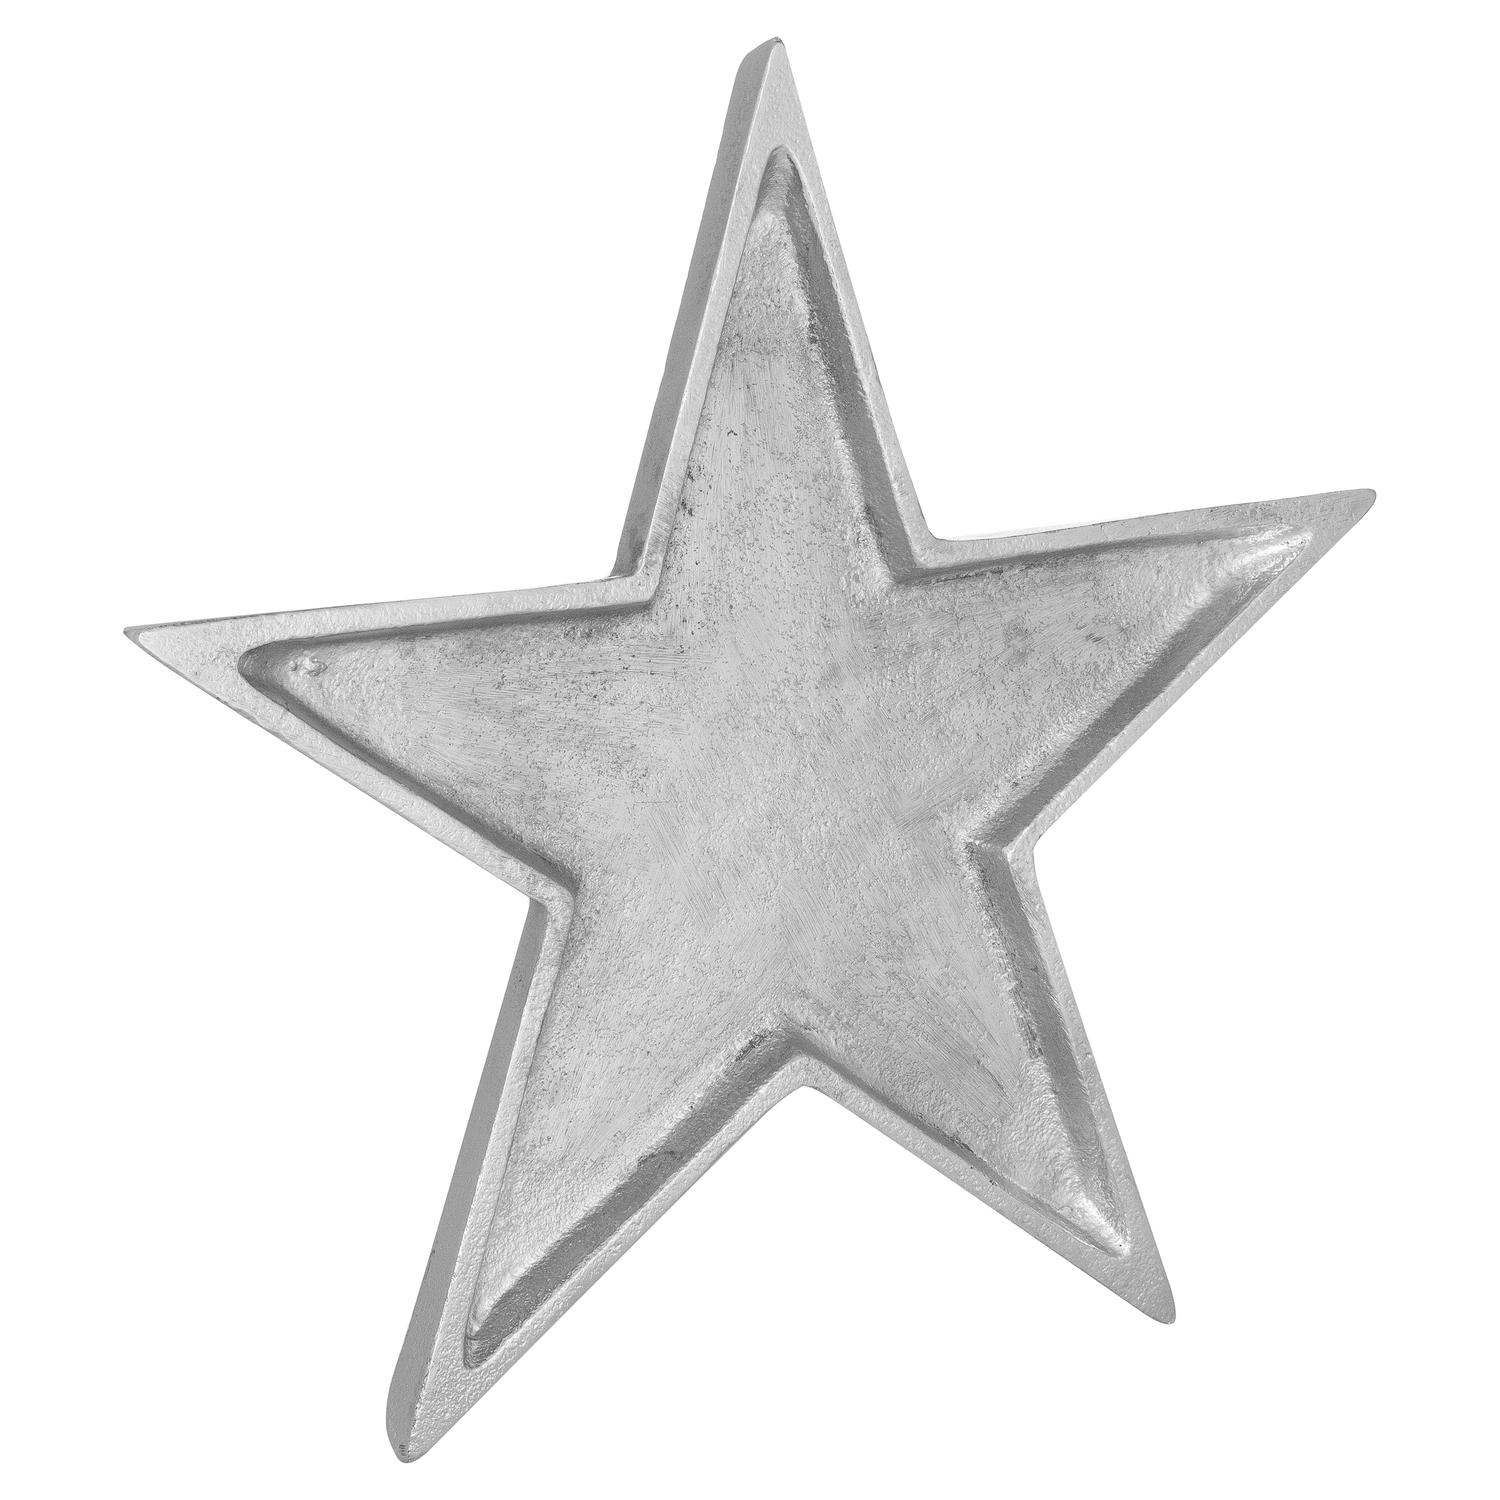 Cast Aluminium Star Dish - Image 1